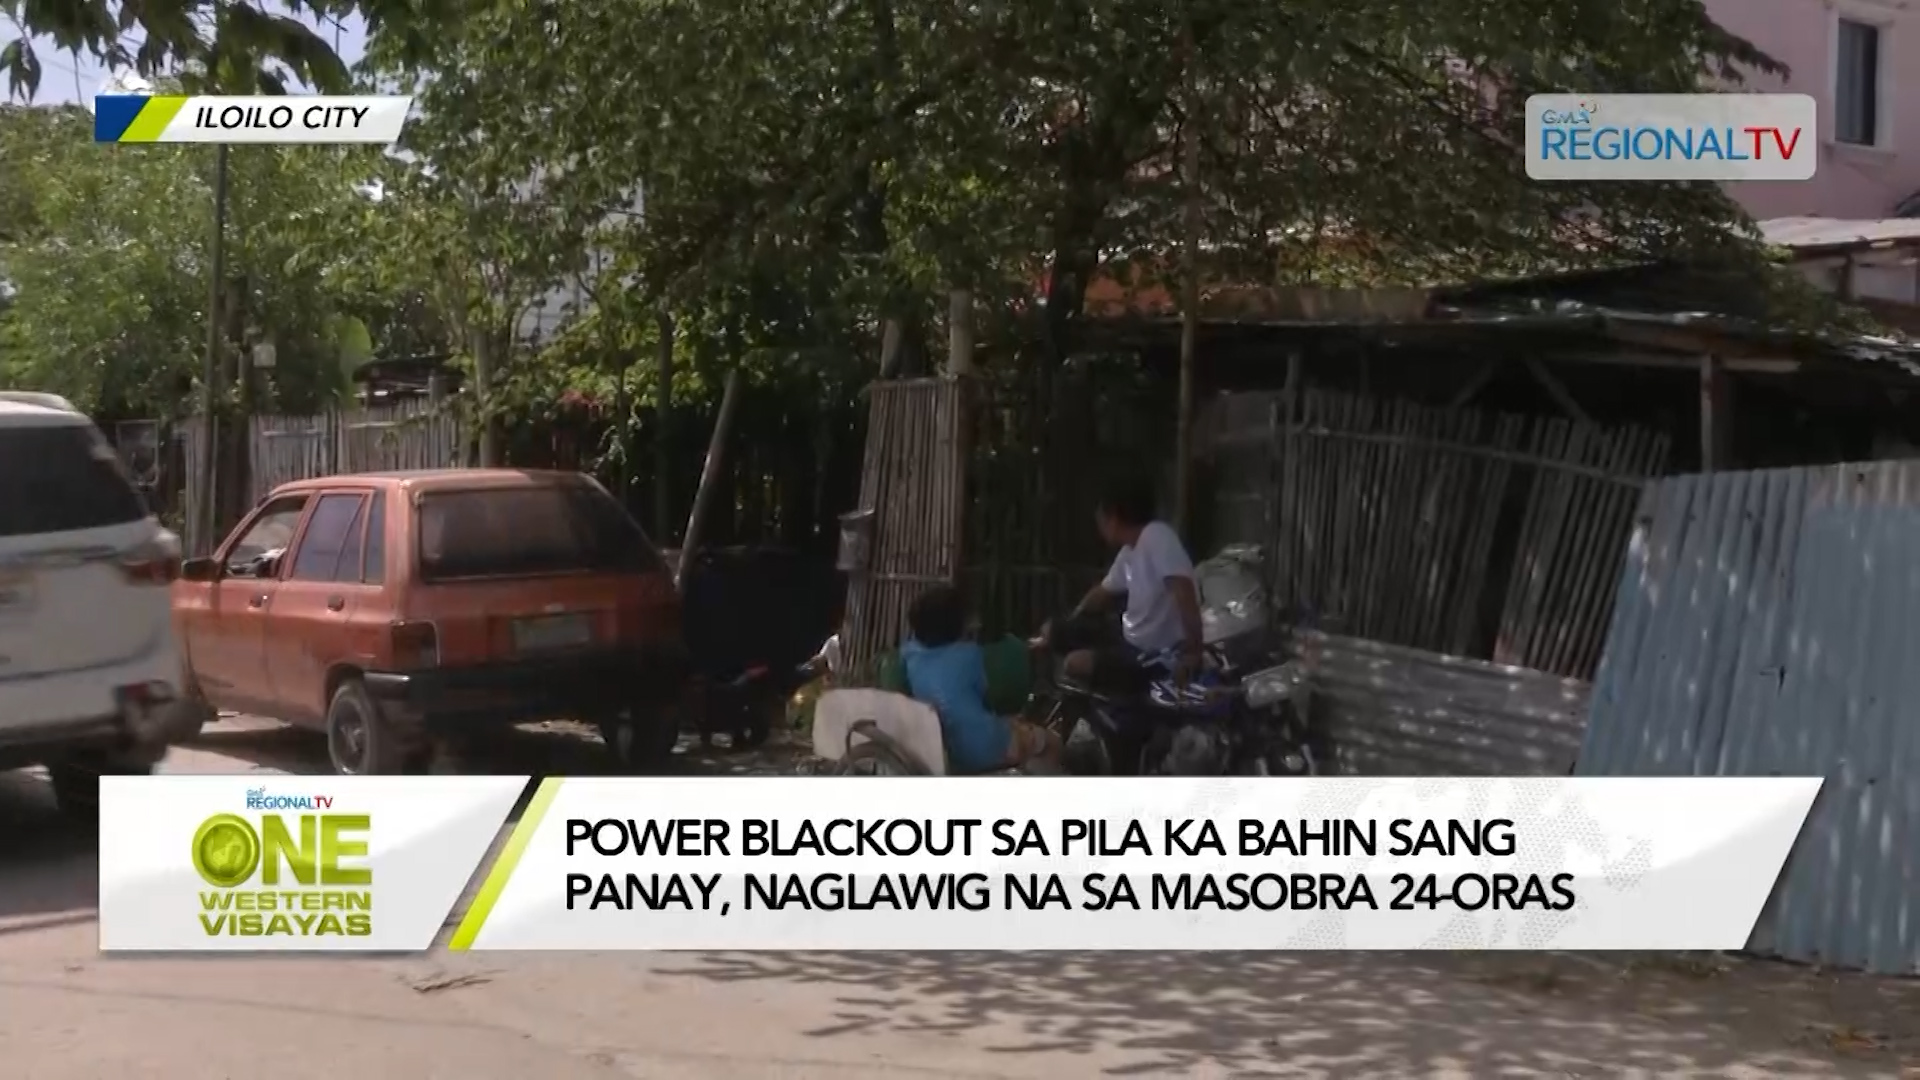 Power blackout sa pila ka bahin sang Panay, naglawig na sa masobra 24-Oras